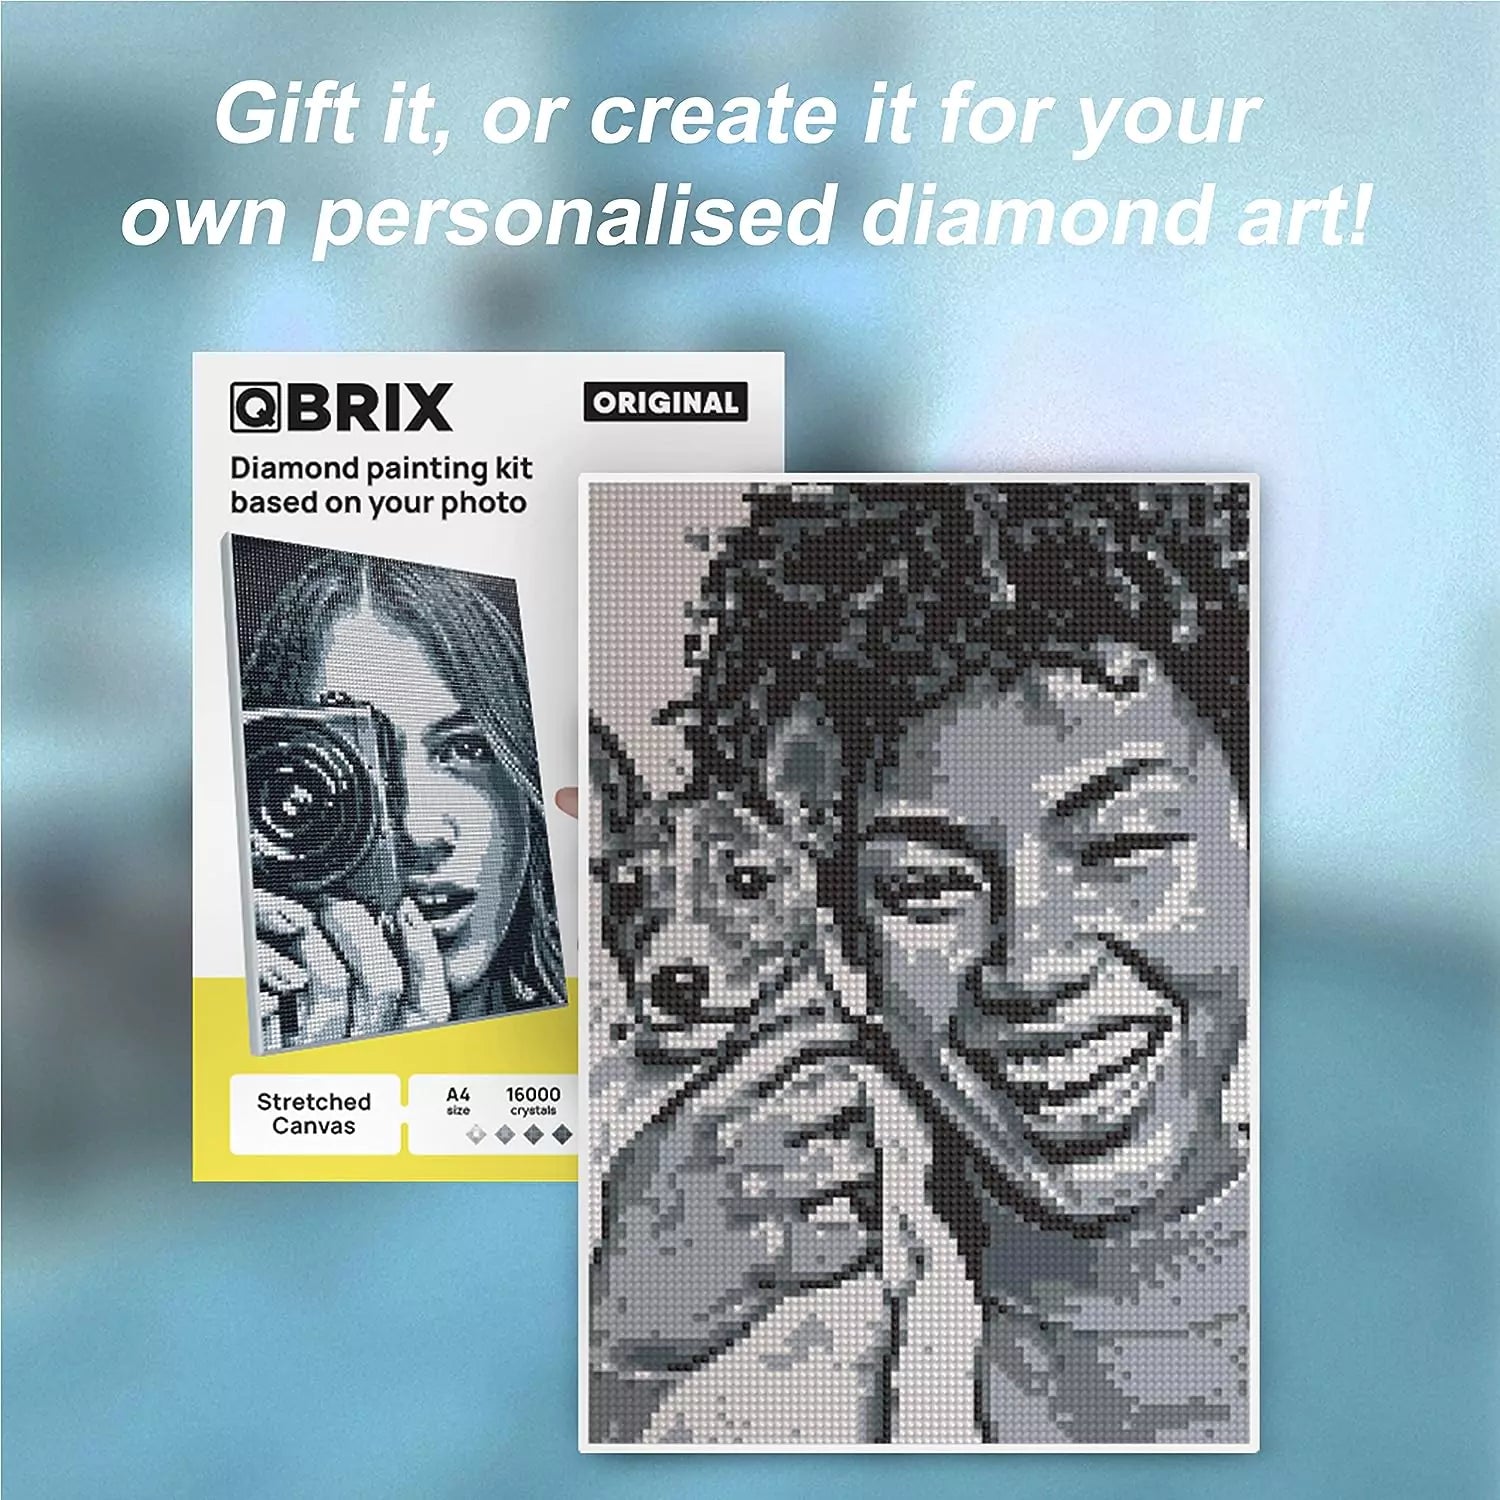 Kit de pintura de diamante personalizado